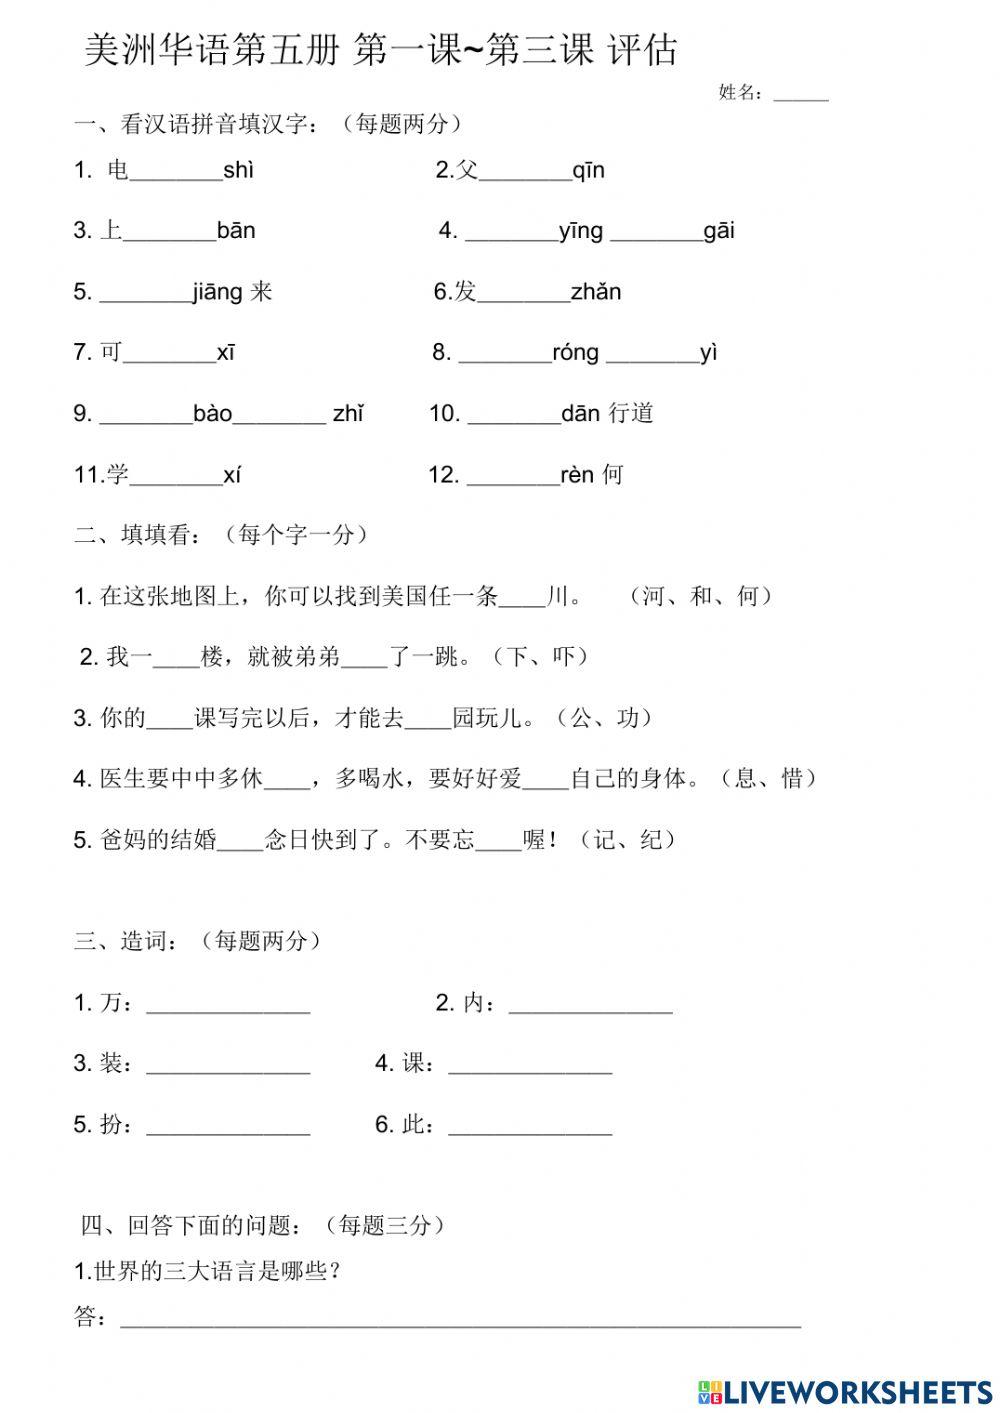 美洲华语第五册第一学期期中考